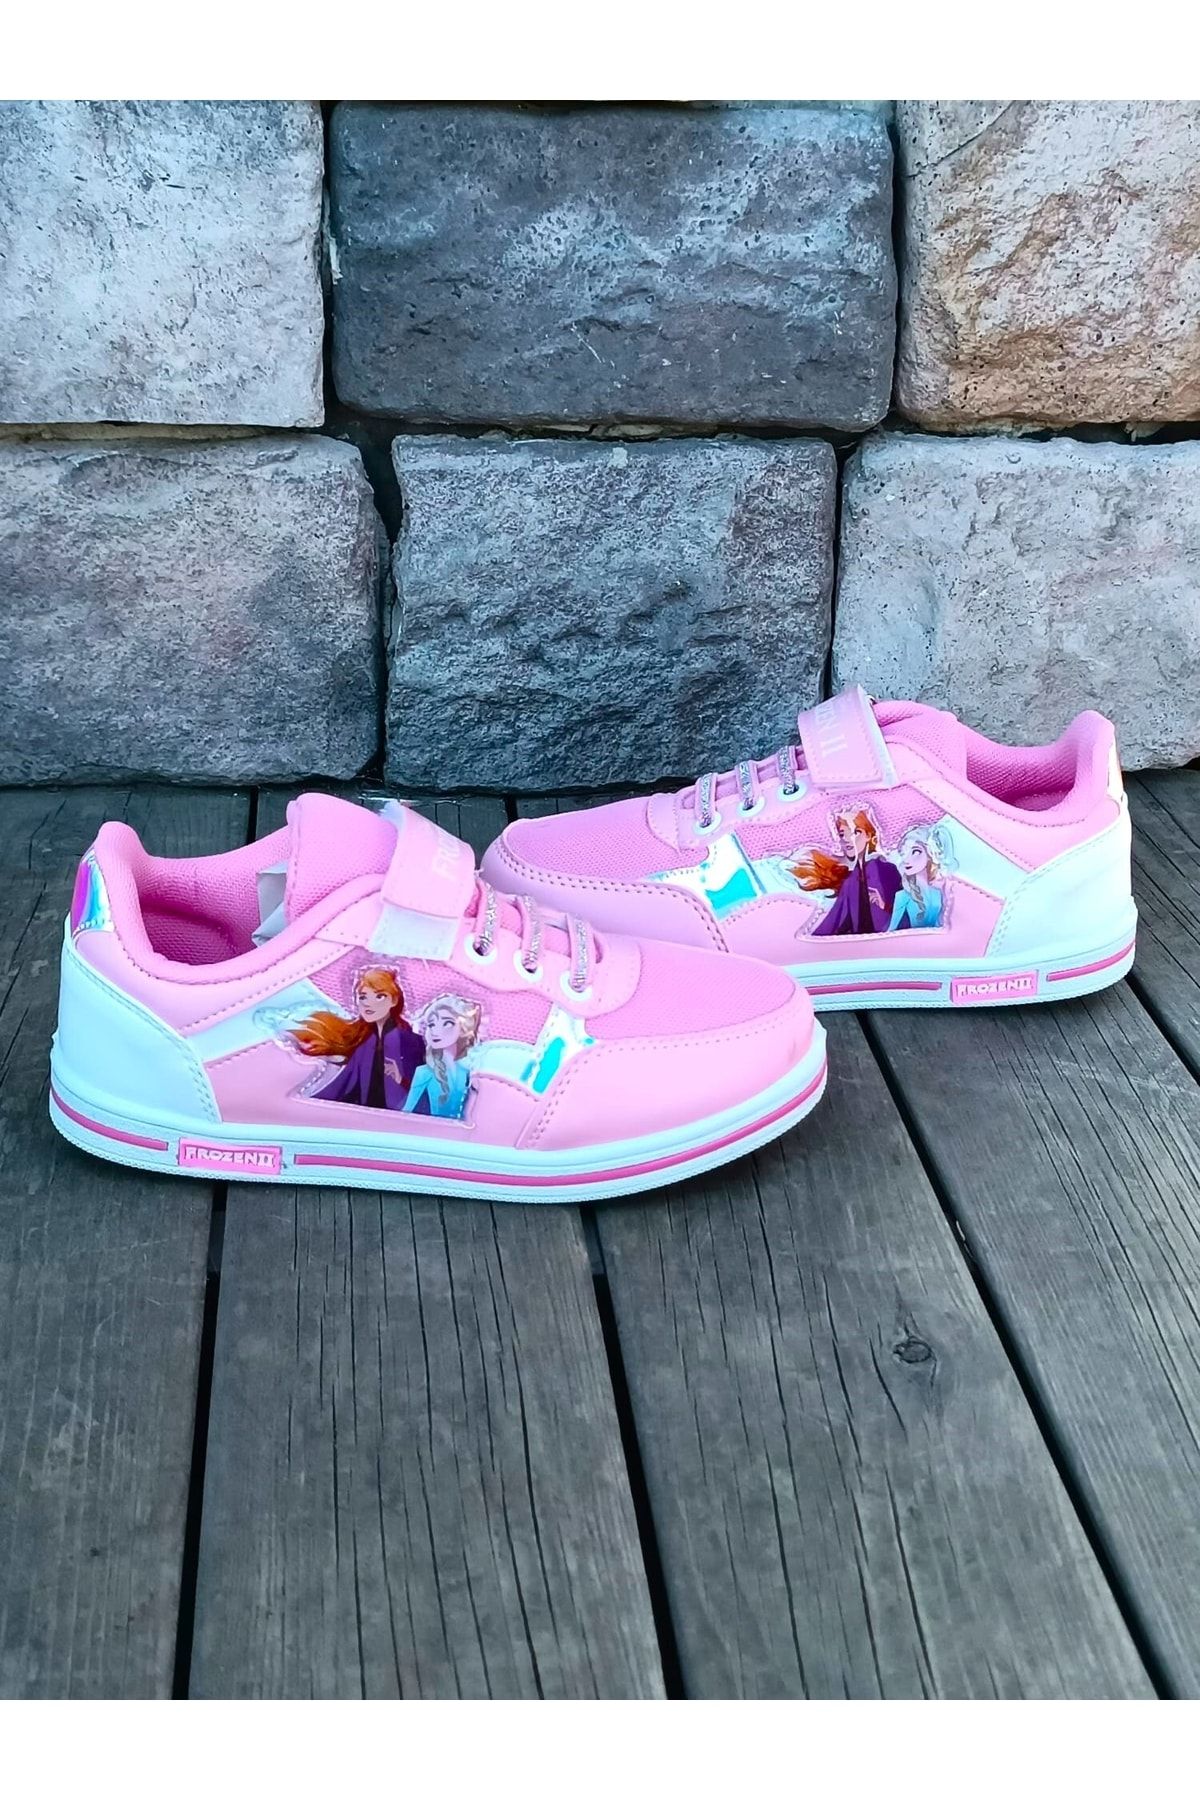 Frozen Sarmy Günlük Kız Çocuk Sneaker Spor Ayakkabı